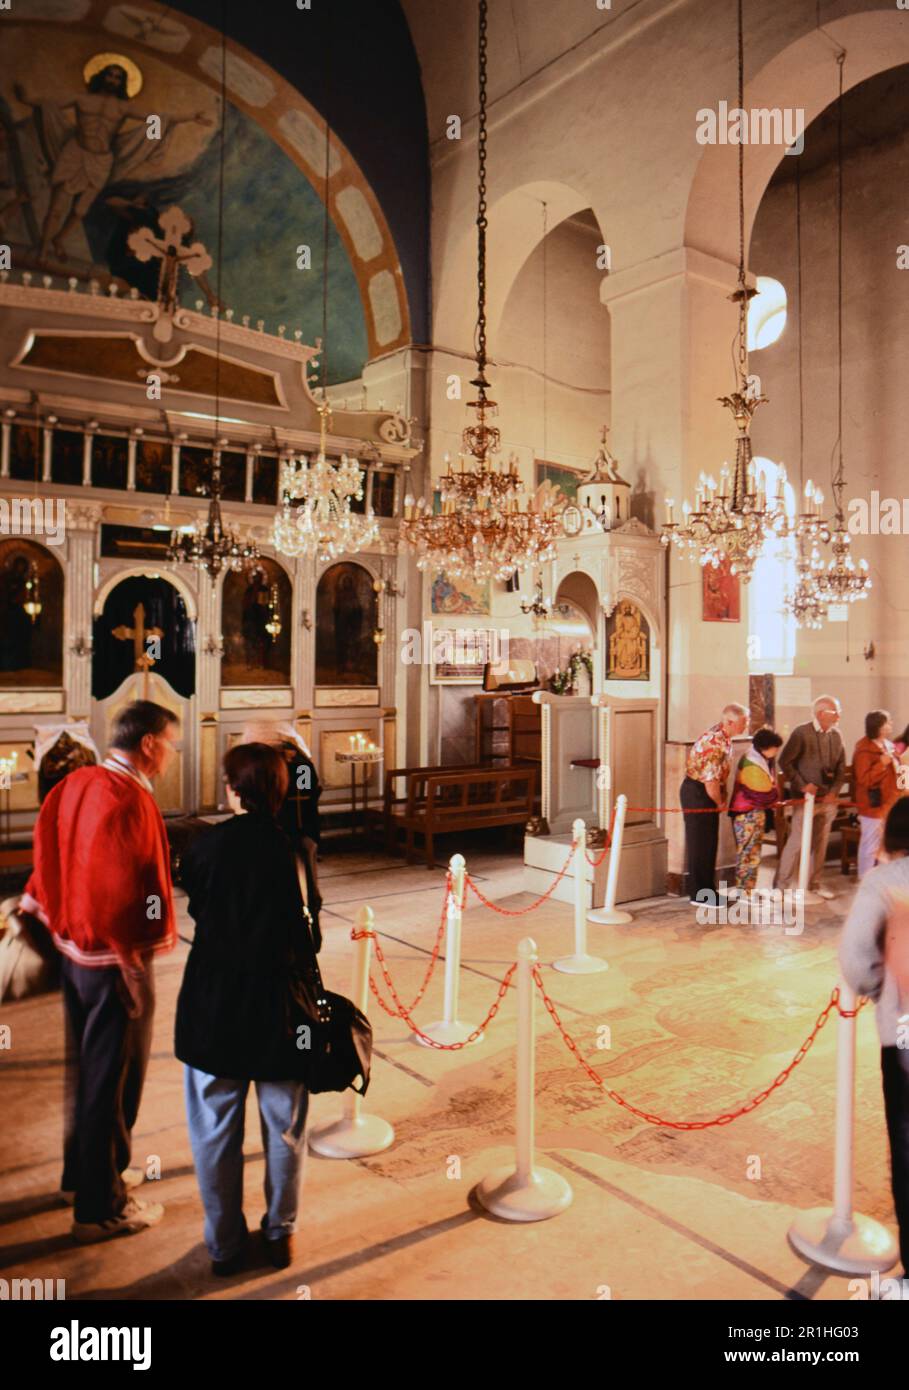 Giordania: S. George's Church nella città di Madaba; la mappa più antica della zona è in piastrelle a mosaico nel pavimento. Foto di Joan Iaconetti ca. 1995 Foto Stock